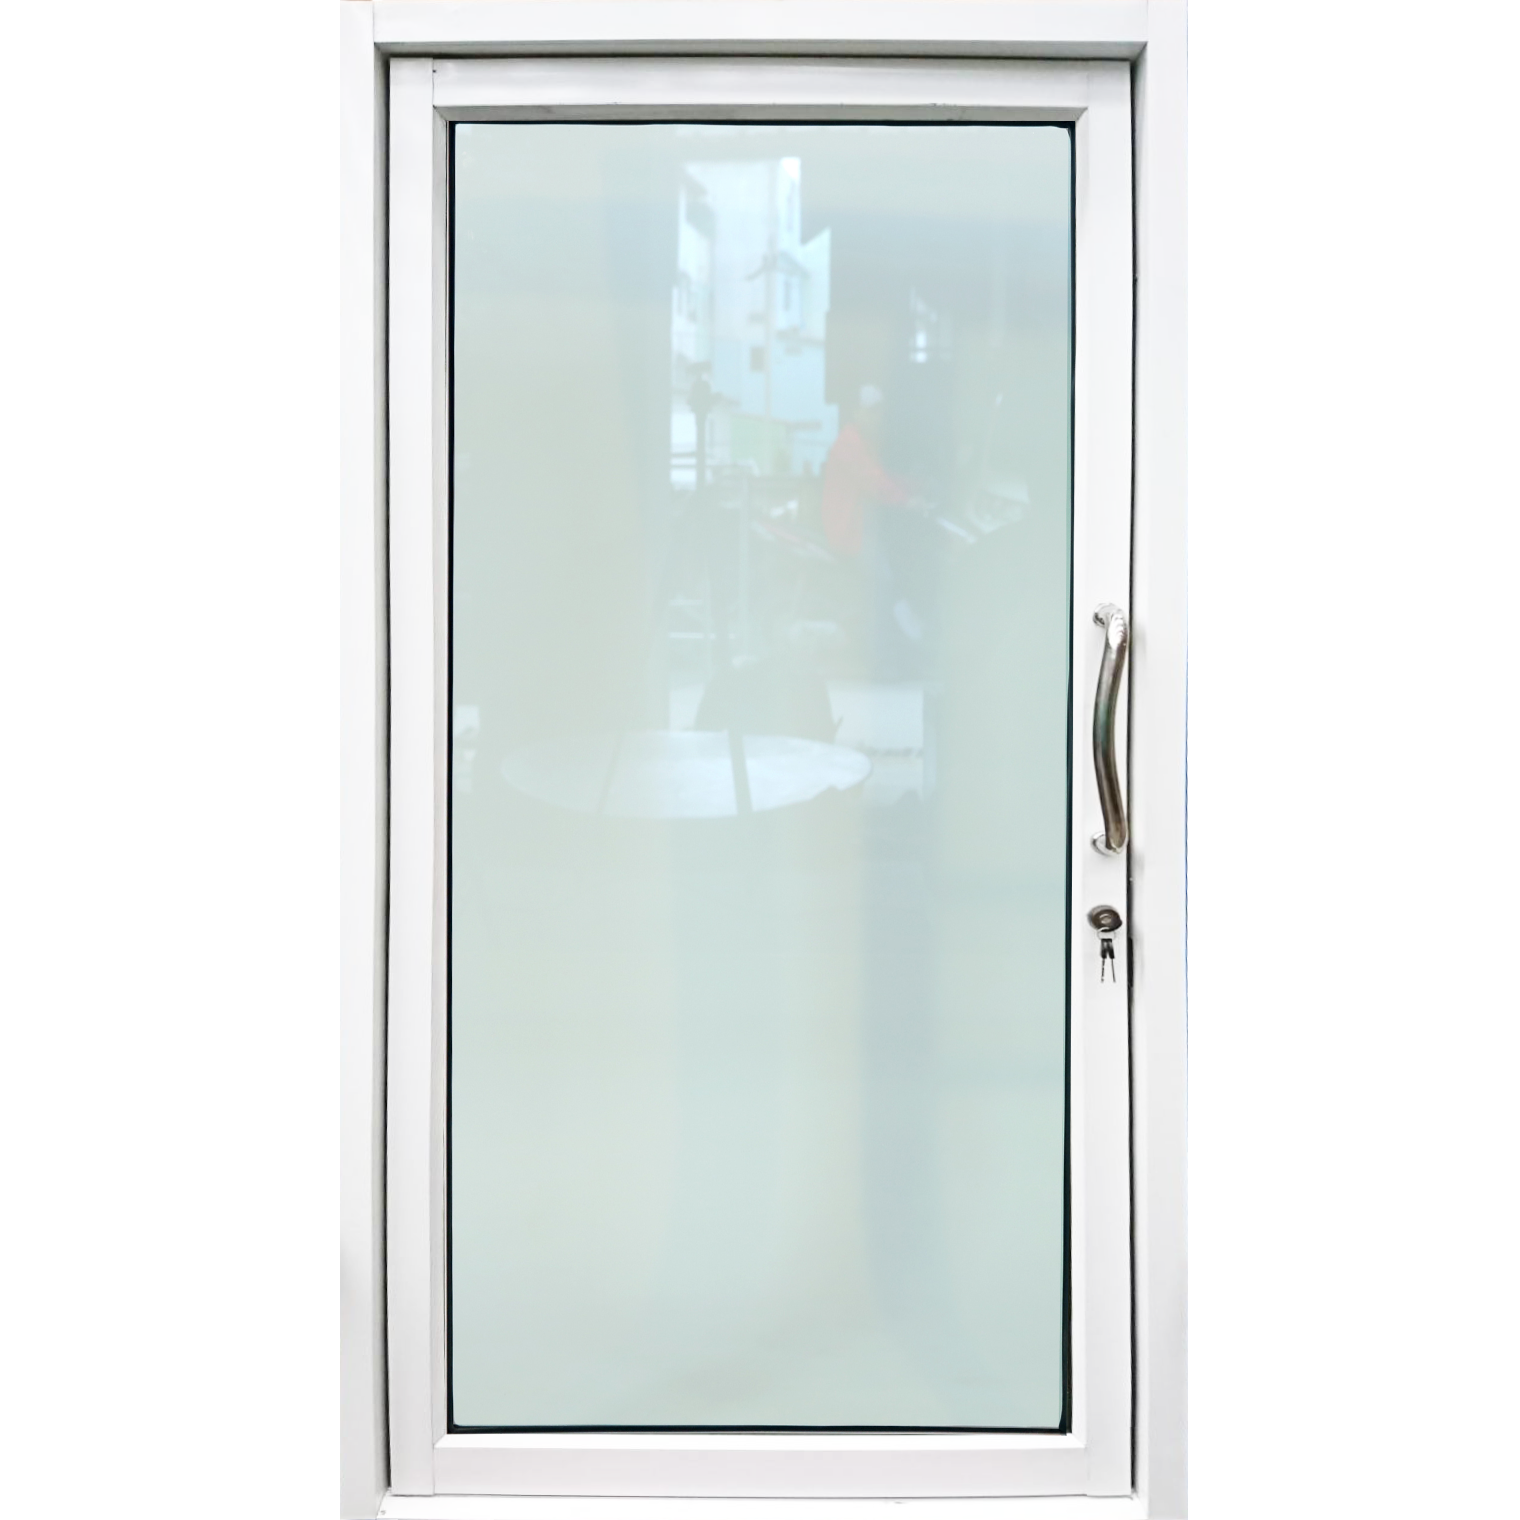 ประตูบานสวิงเดี่ยว อลูมิเนียมสีอบขาว+กระจกใสเขียว 100ซม.*205ซม.